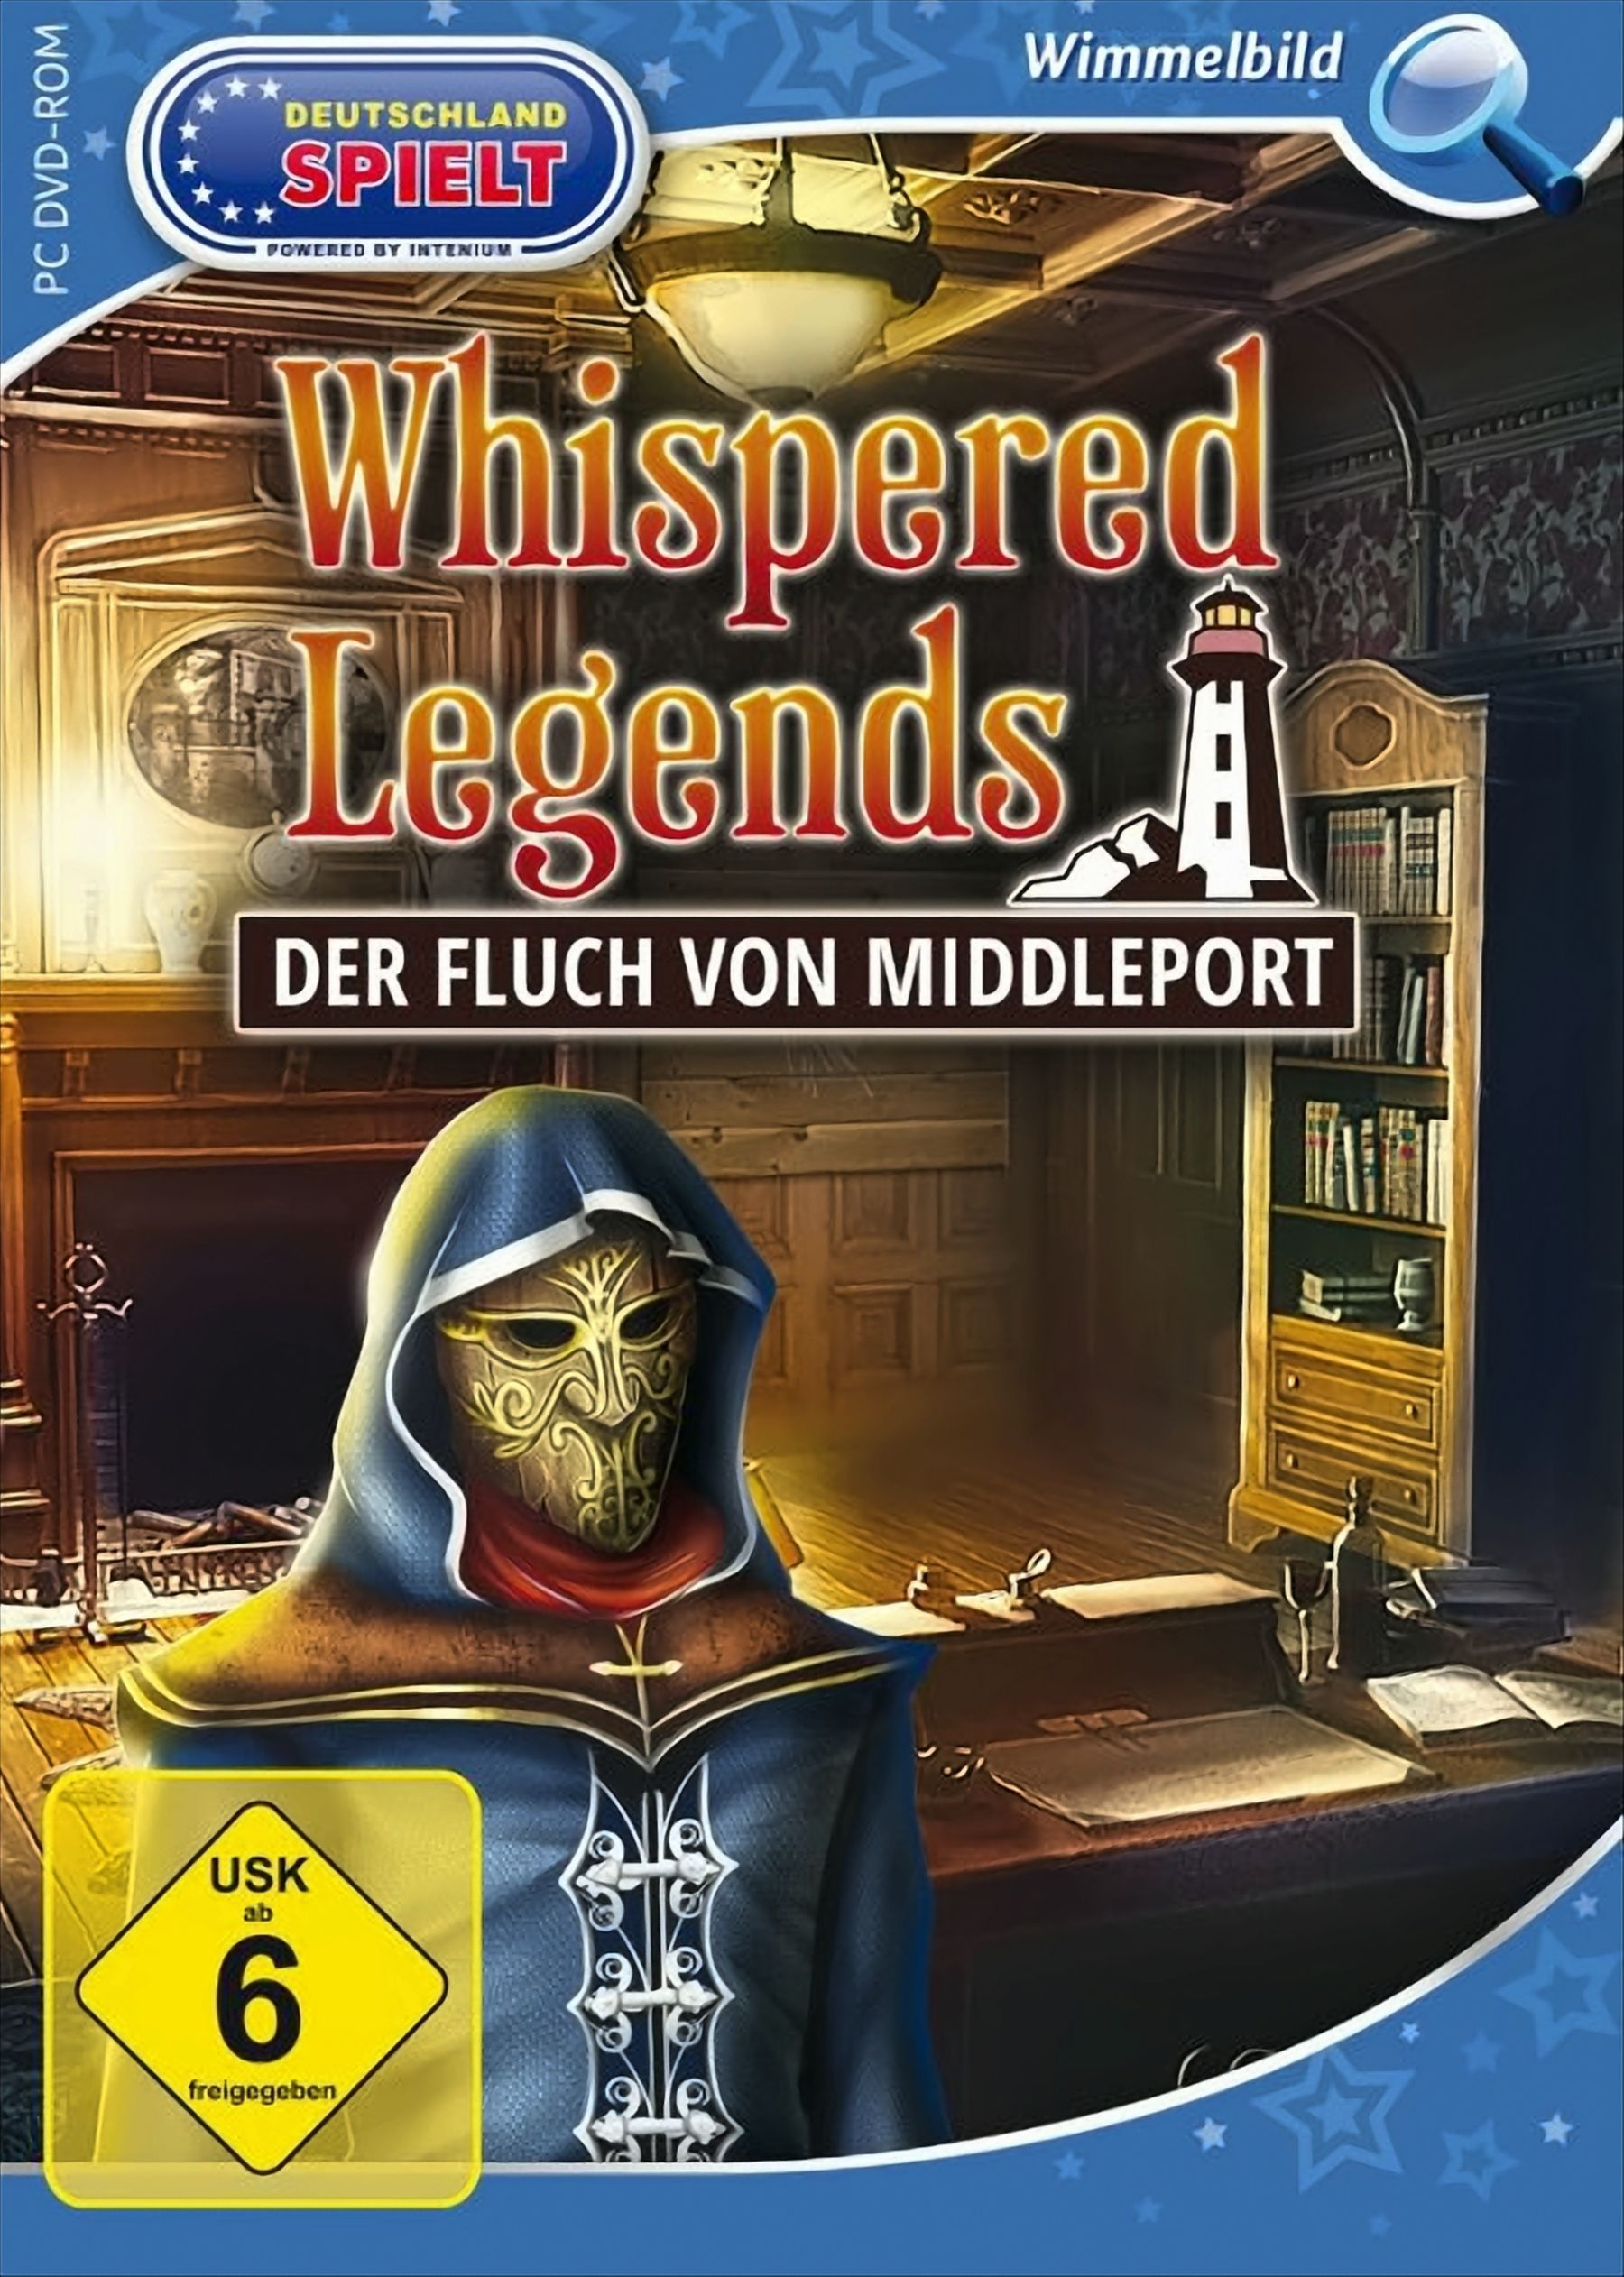 Whispered Der [PC] Middleport von Fluch Legends: -